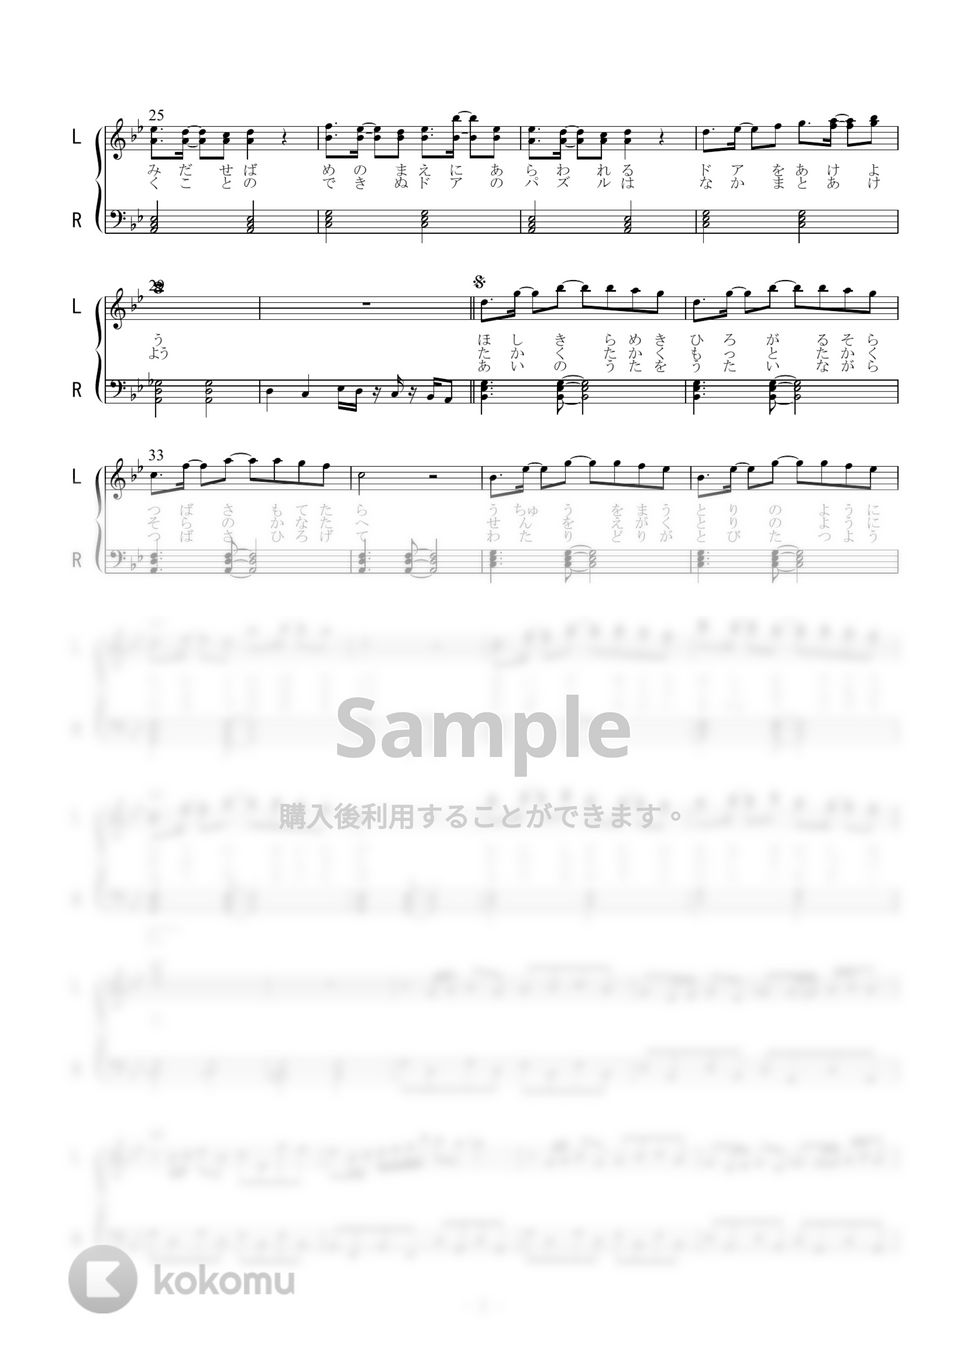 千本木彩花 - 星の旅人 (ピアノソロ) by 二次元楽譜製作所